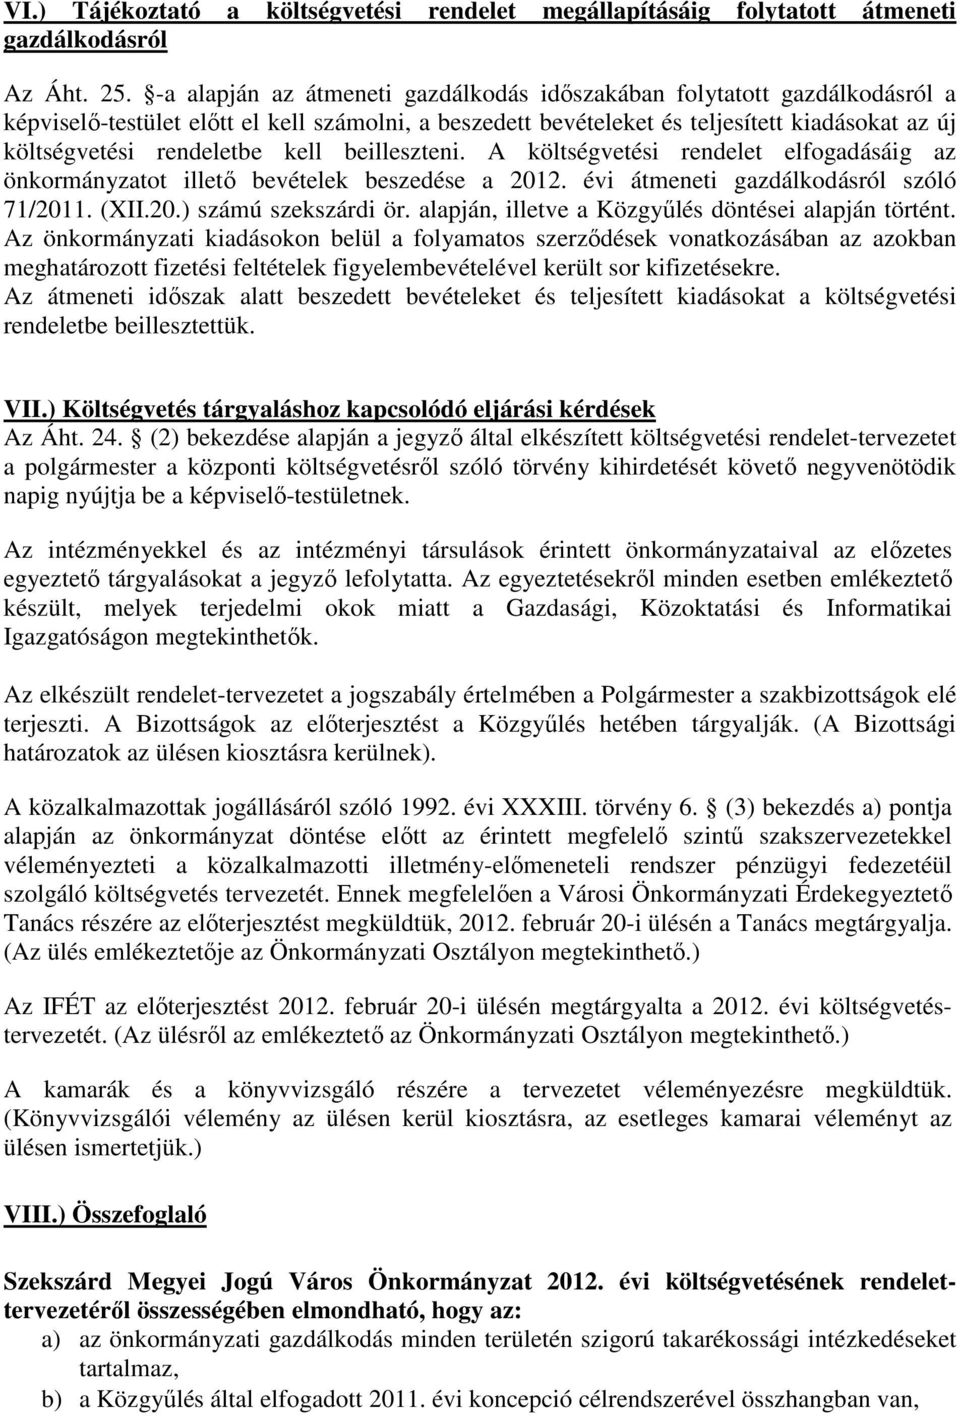 kell beilleszteni. A költségvetési rendelet elfogadásáig az önkormányzatot illetı bevételek beszedése a 2012. évi átmeneti gazdálkodásról szóló 71/2011. (XII.20.) számú szekszárdi ör.